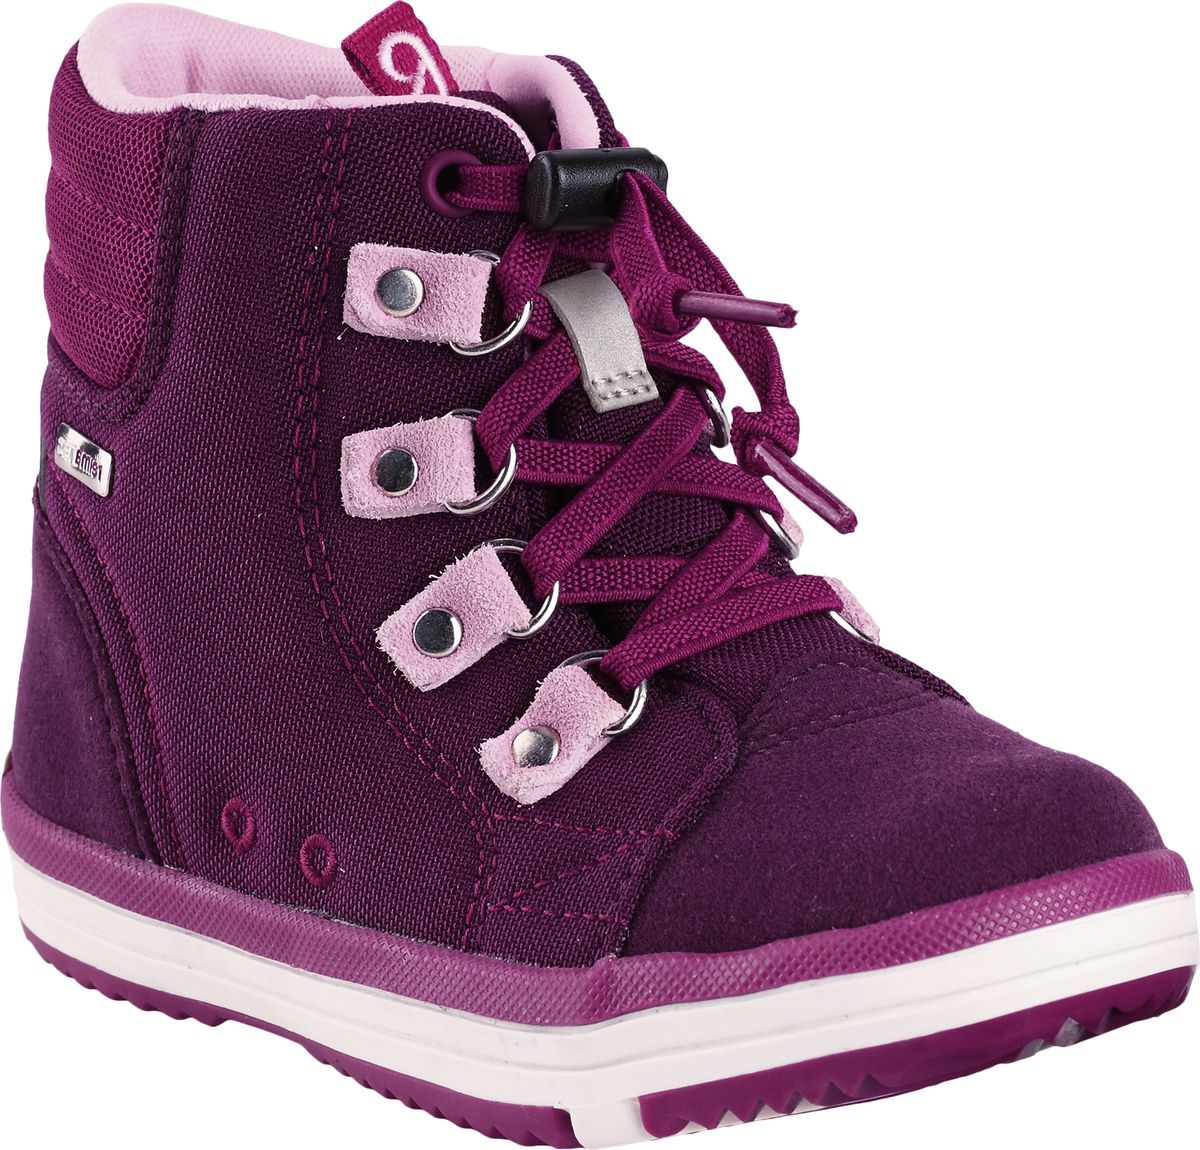 Ботинки детские Reima Wetter, цвет: фиолетовый. 5693434960. Размер 24